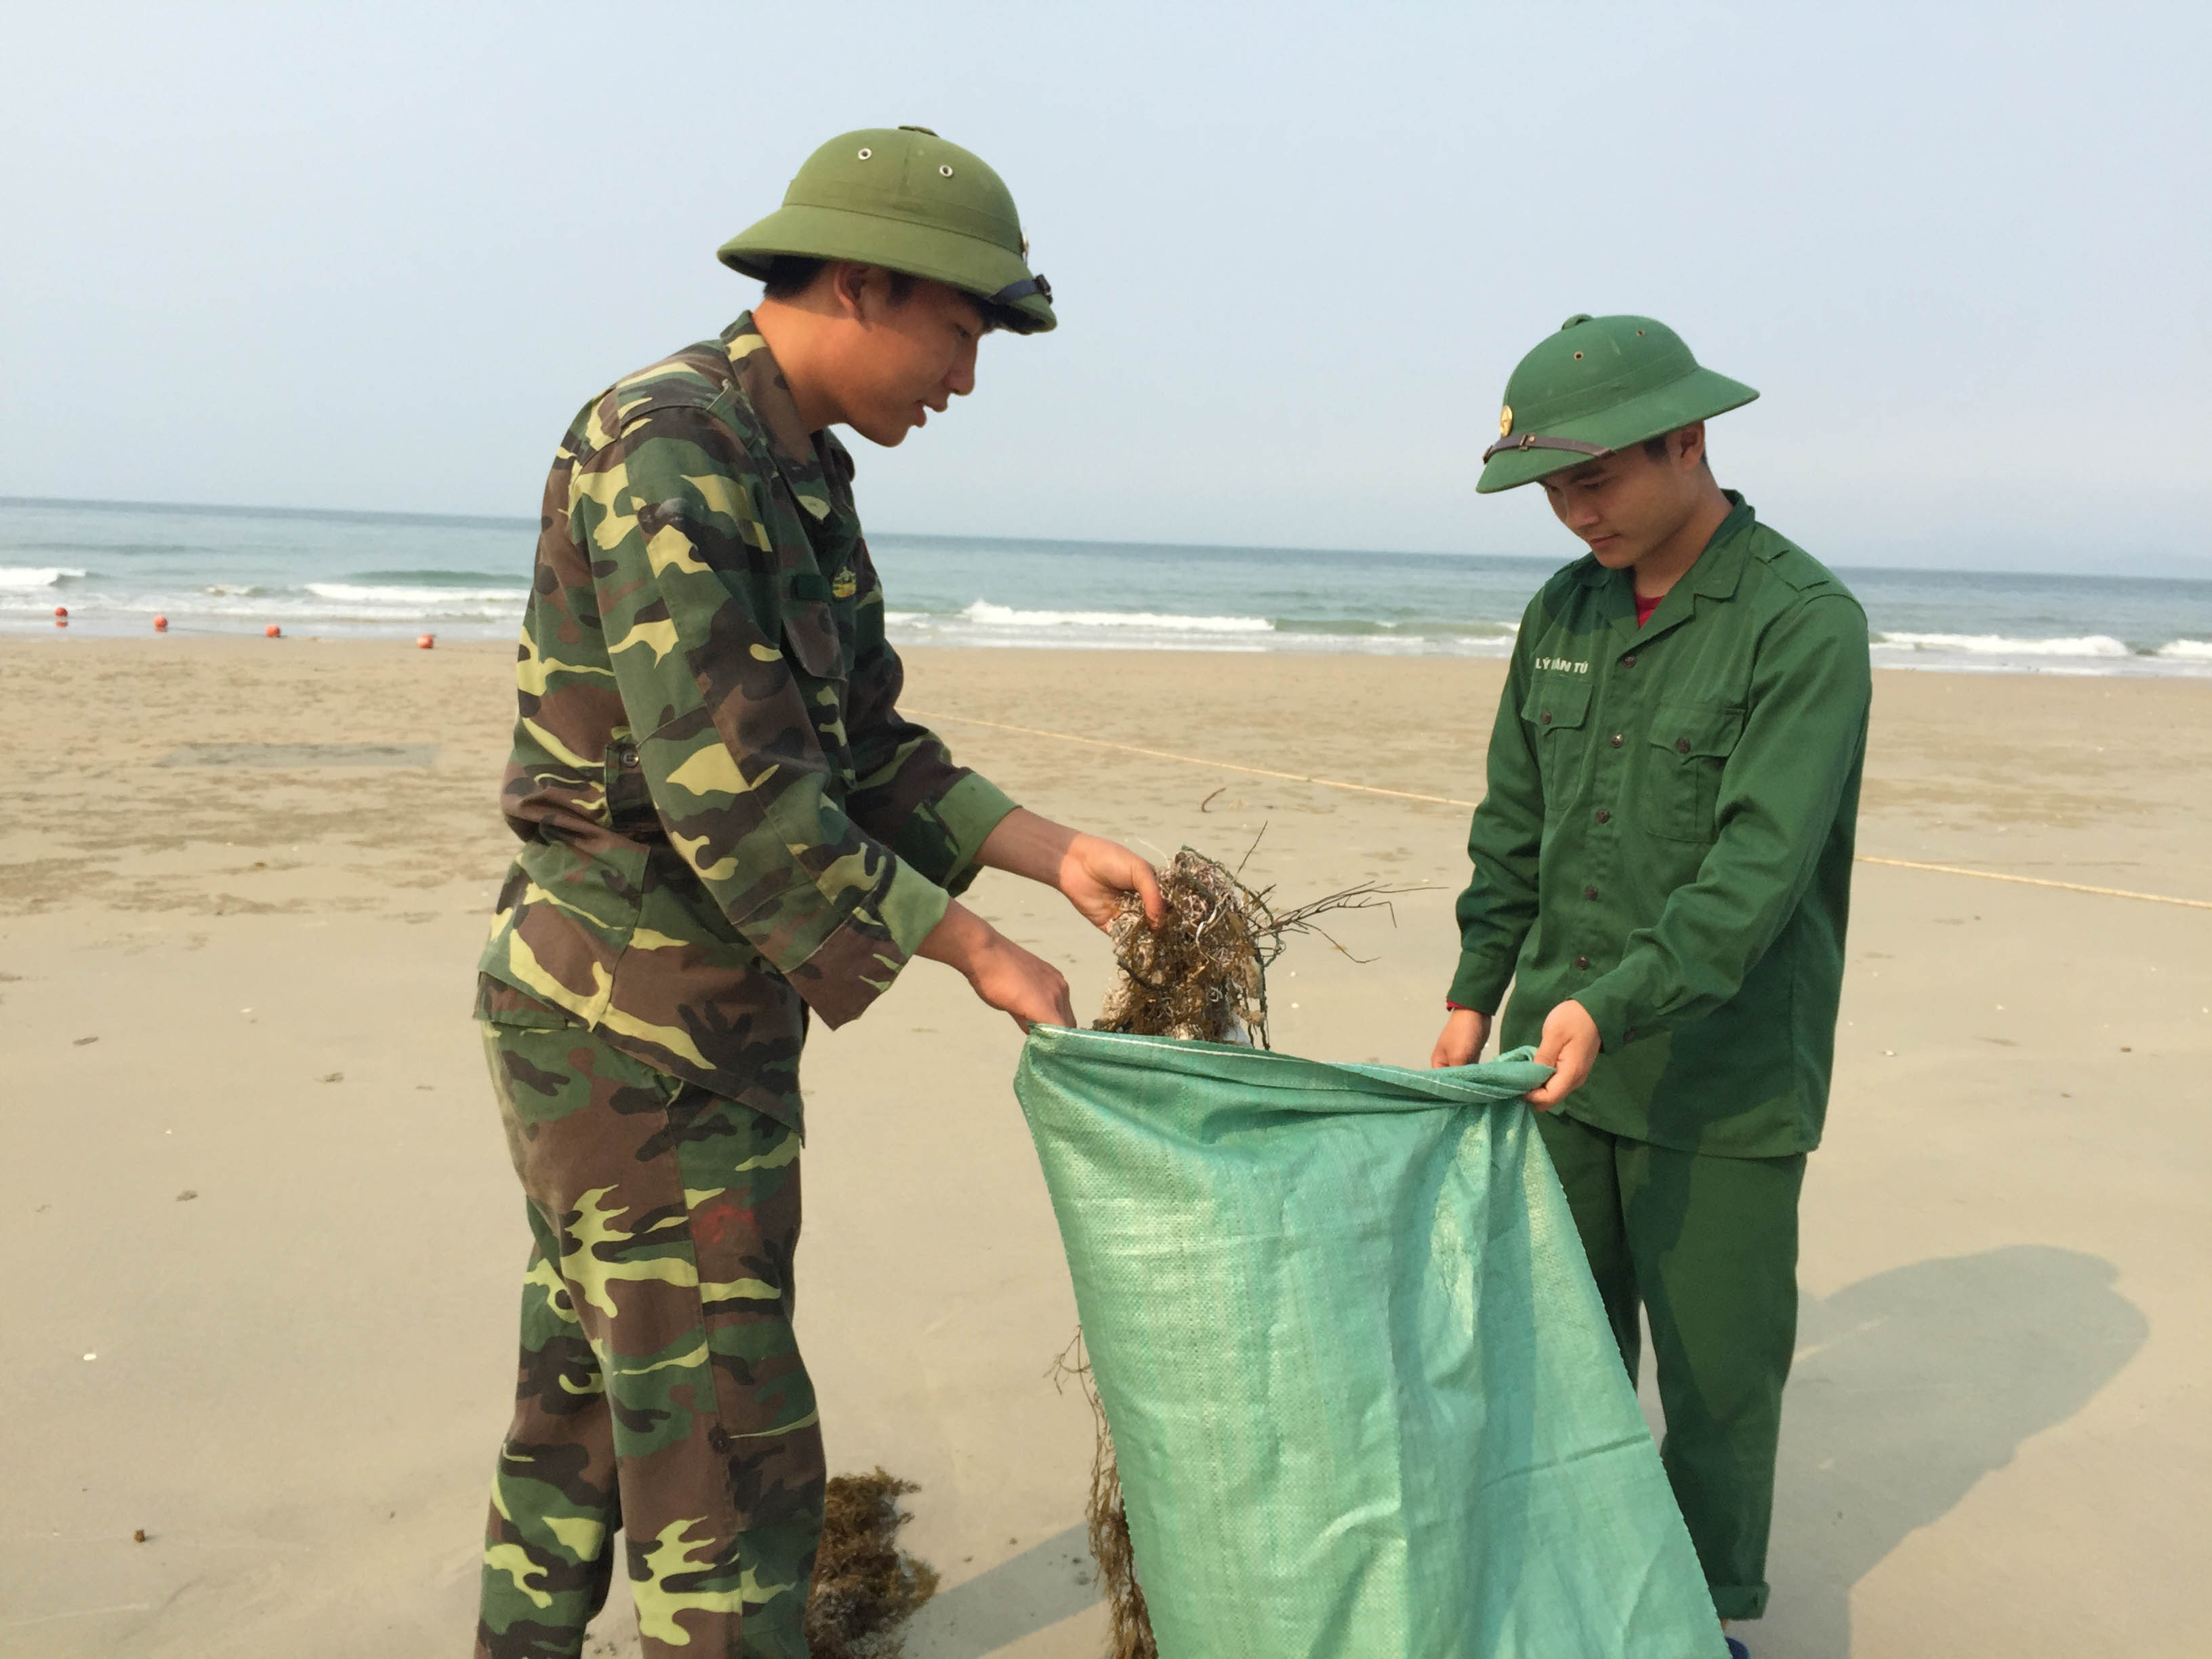 Đoàn TNCS Hồ Chí Minh huyện phối hợp với các đồn Biên phòng trên địa bàn dọn vệ sinh môi trường tại các bãi biển, tiếp tục thực hiện tốt kế hoạch “Hãy làm sạch biển năm 2018”.